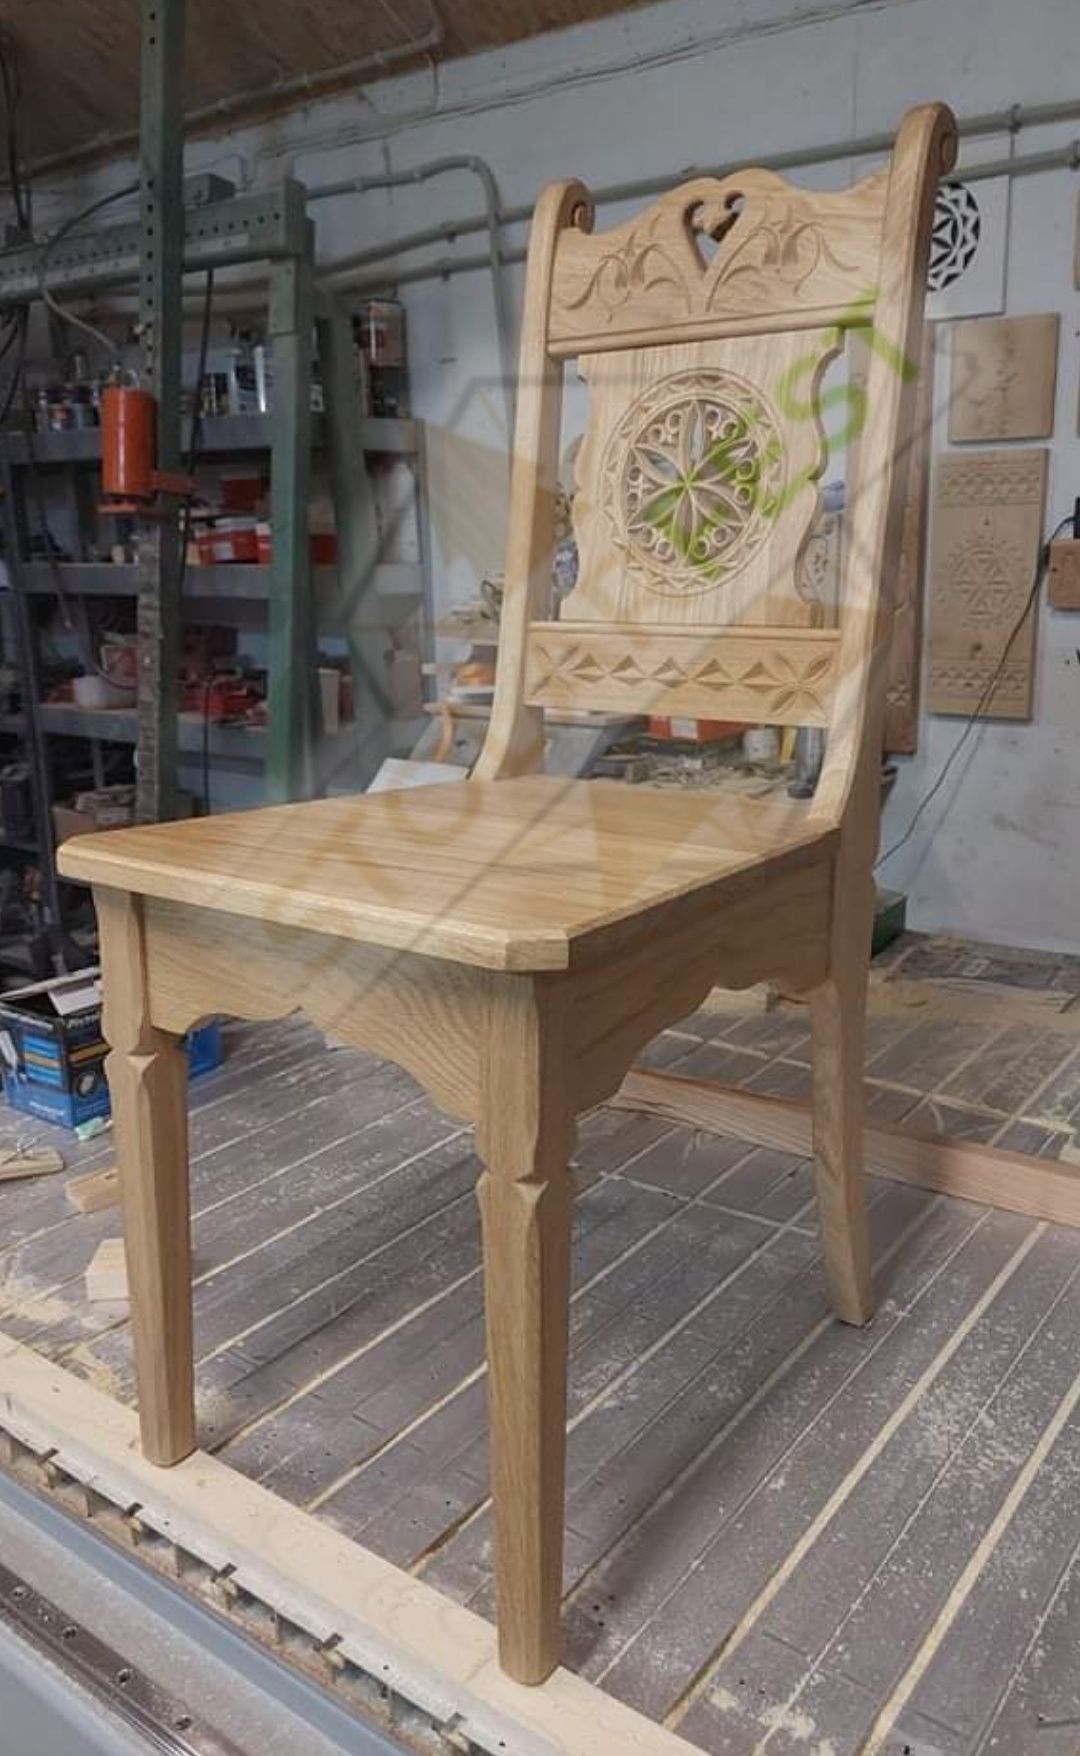 discretion organize Oak Krzesło dębowe góralskie zakopiańskie drewniane rzeźbione StolarFest  Zakopane • OLX.pl